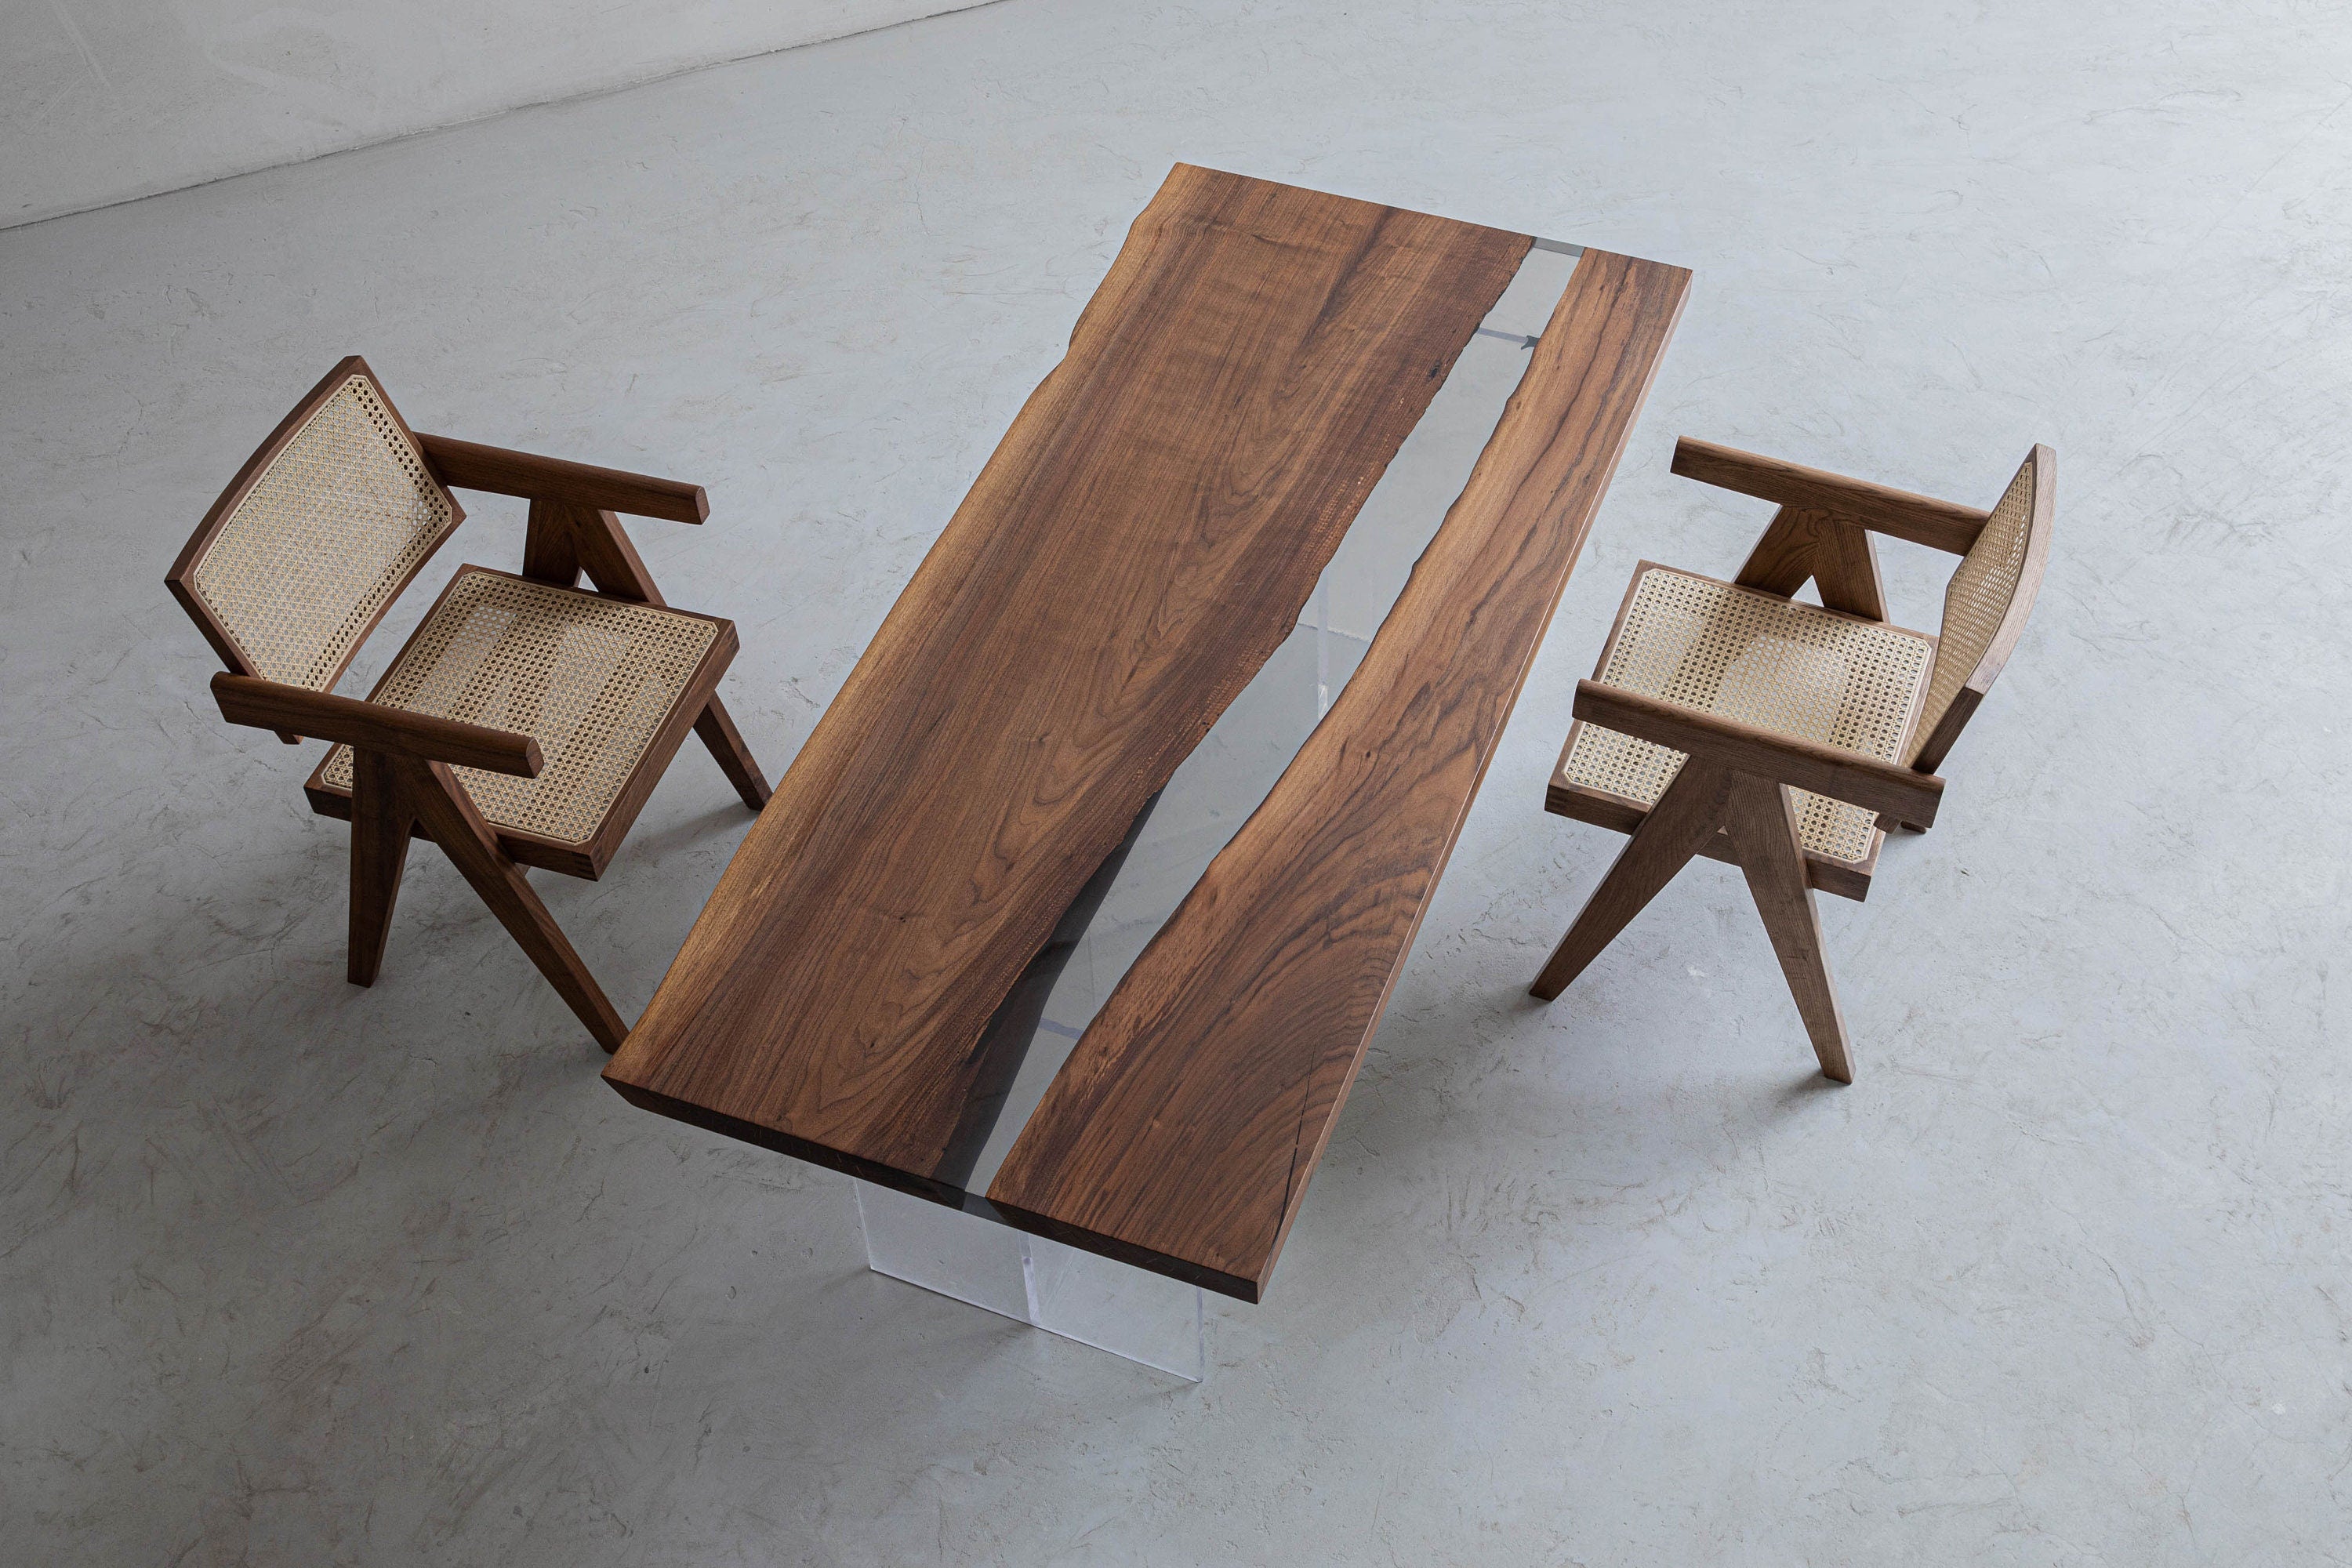 手作りエポキシテーブル、透明家具ビビッドエッジ、特殊エポキシ木樹脂テーブル